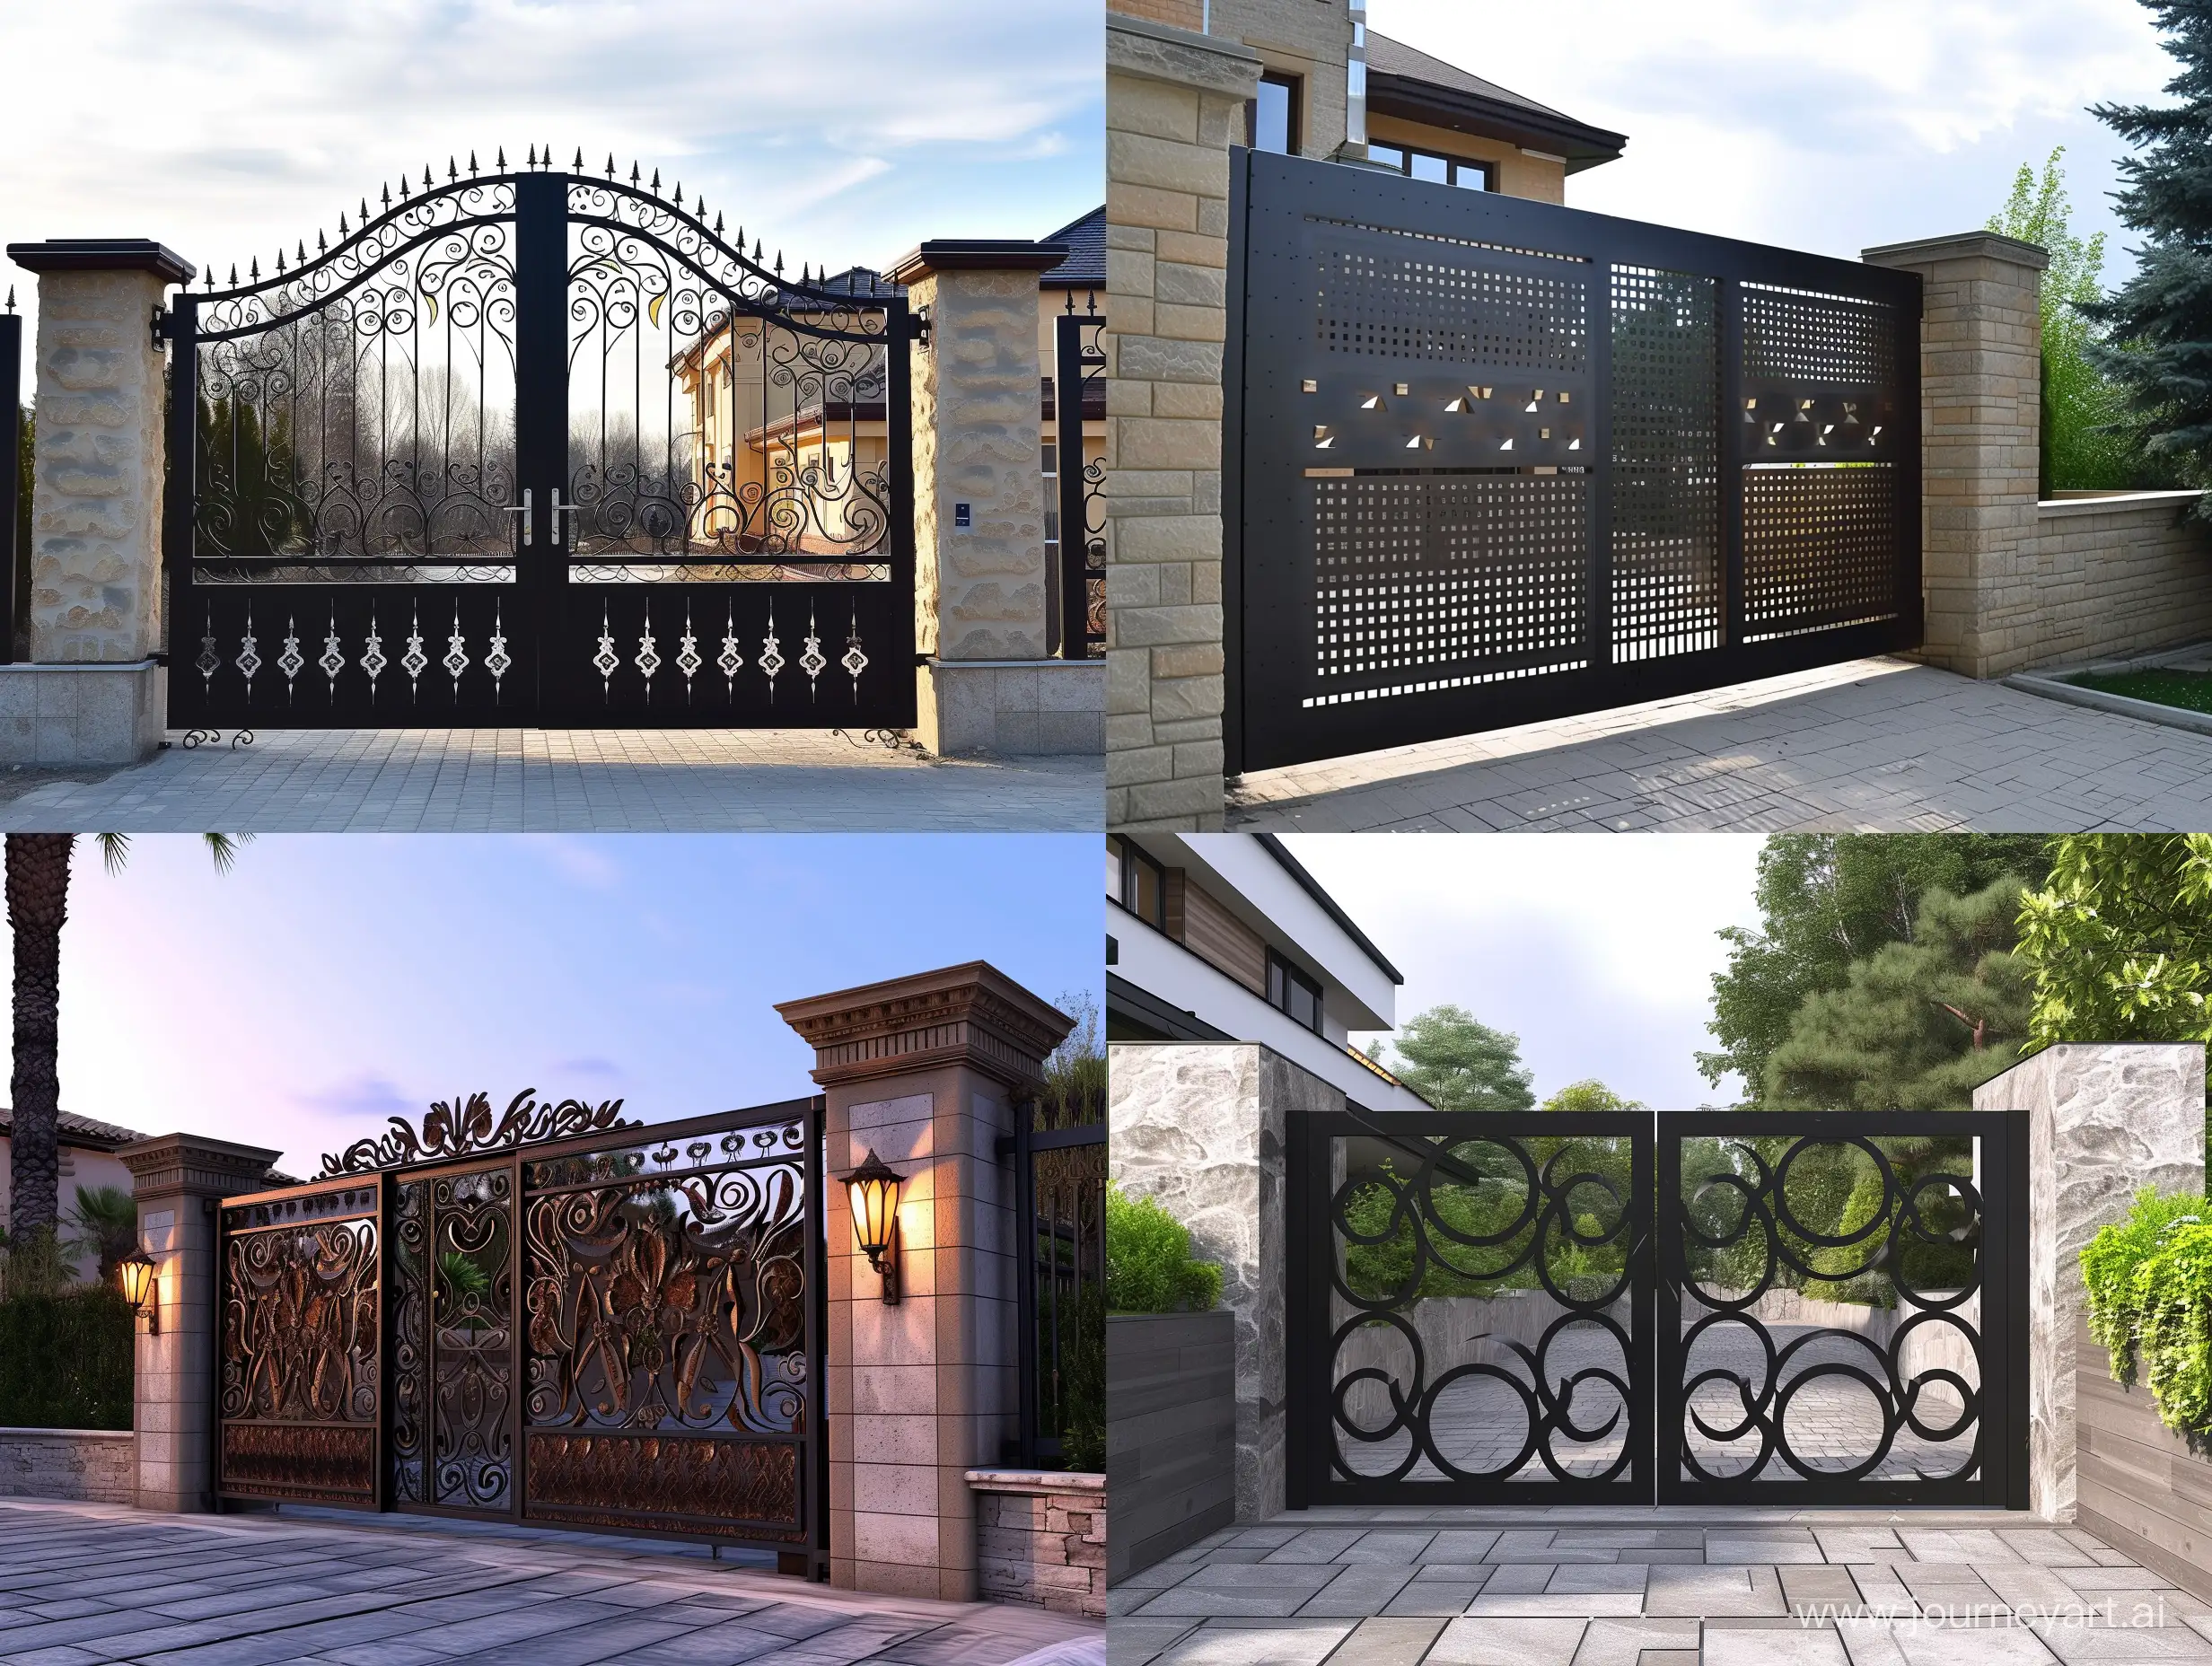 Elegant-Garden-Gate-Design-with-Intricate-Patterns